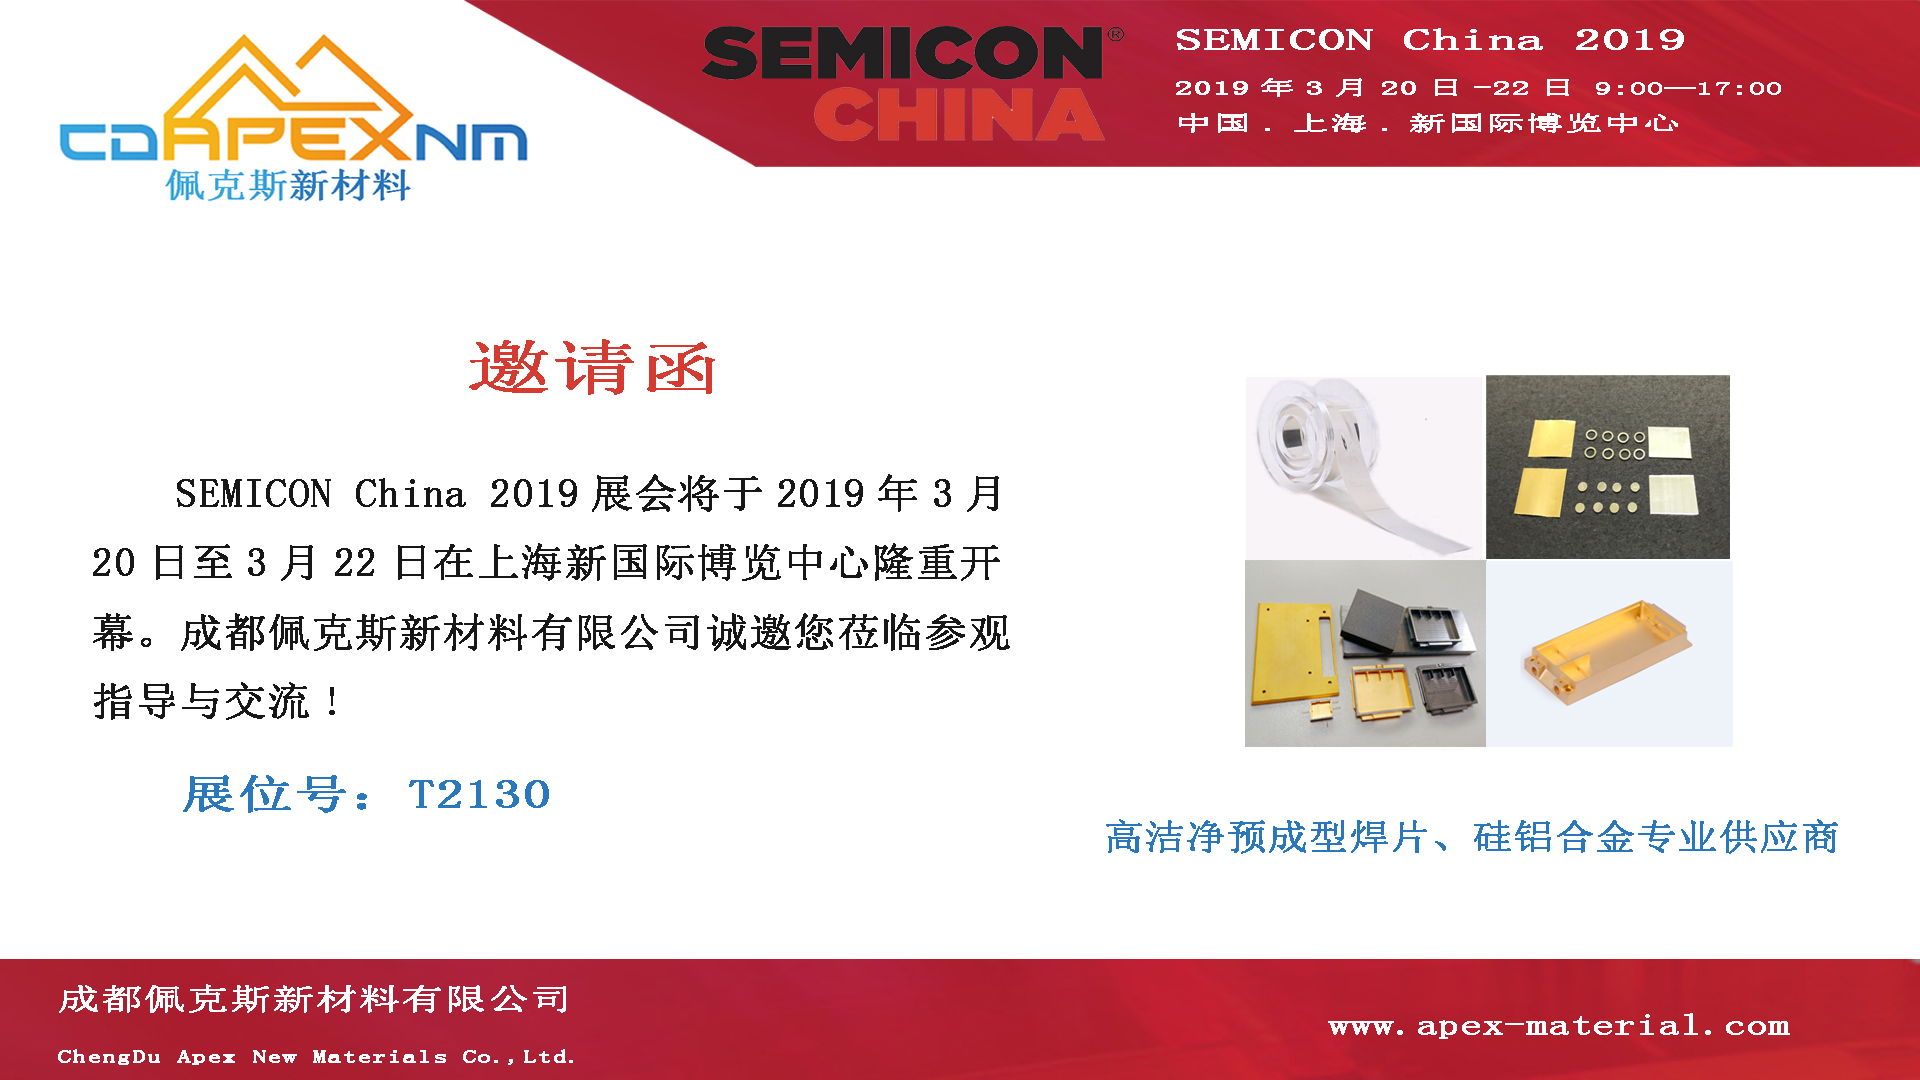 成都佩克斯新材料有限公司将参加SEMICON China 2019展会(图1)